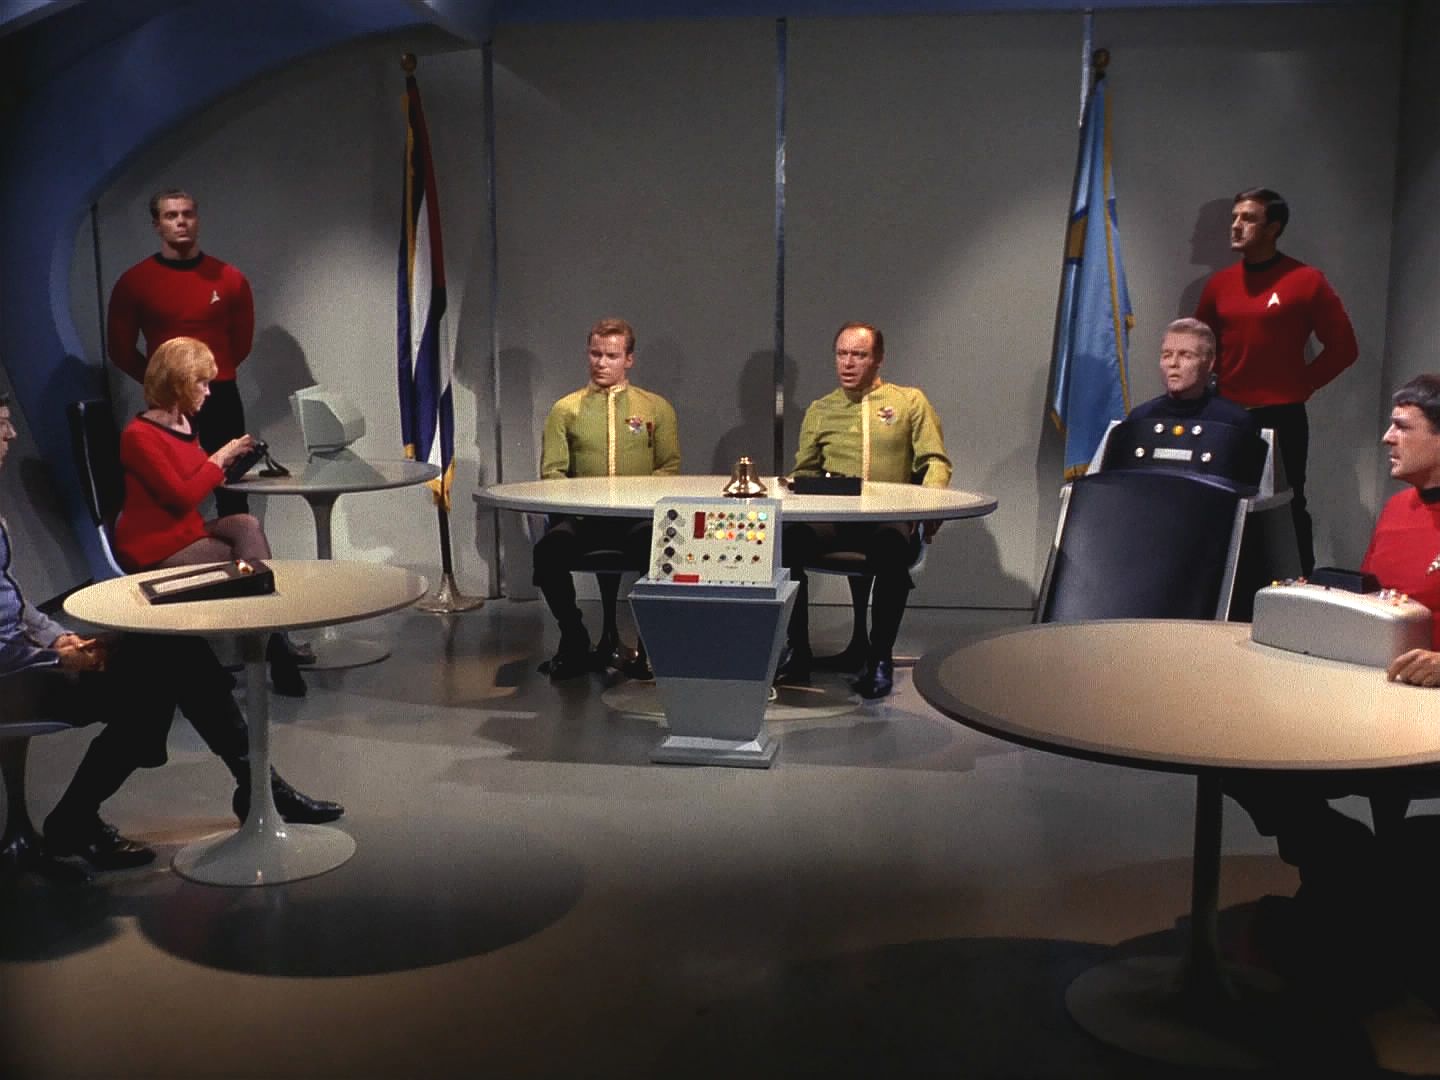 Spock ještě před jejich příchodem přikázal své zatčení. Nyní požaduje okamžitý vojenský soud za vzpouru a zradu. Třetím potřebným vysokým důstojníkem bude kapitán Pike.